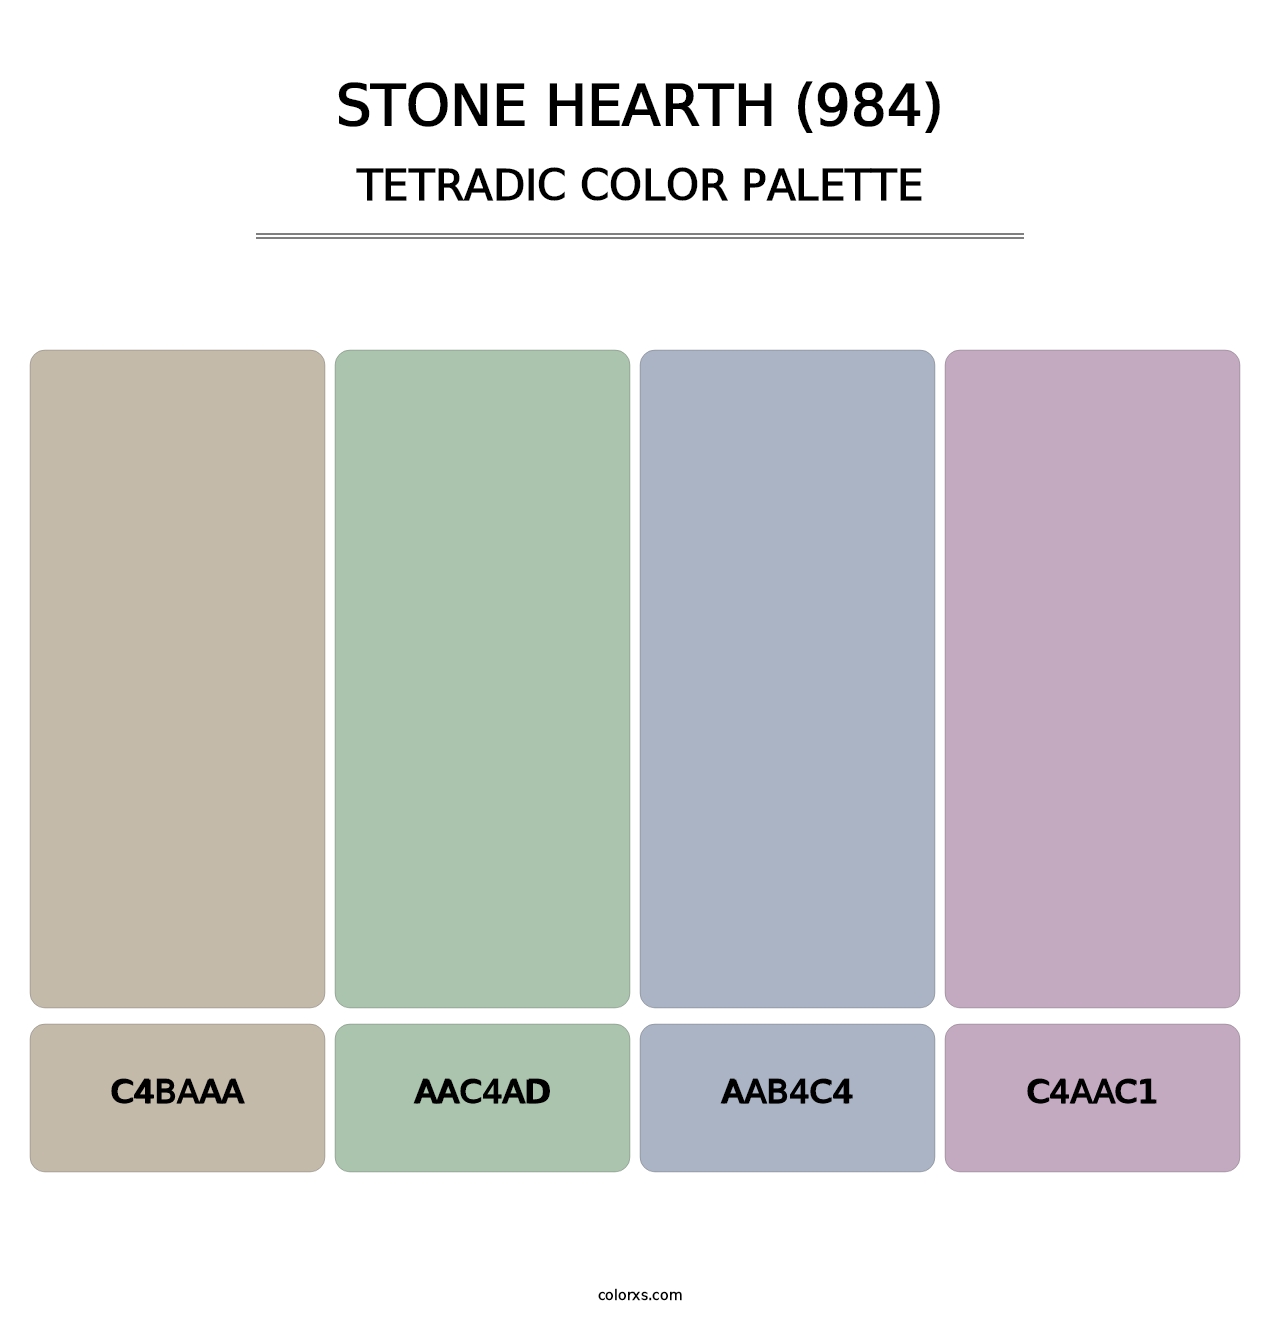 Stone Hearth (984) - Tetradic Color Palette